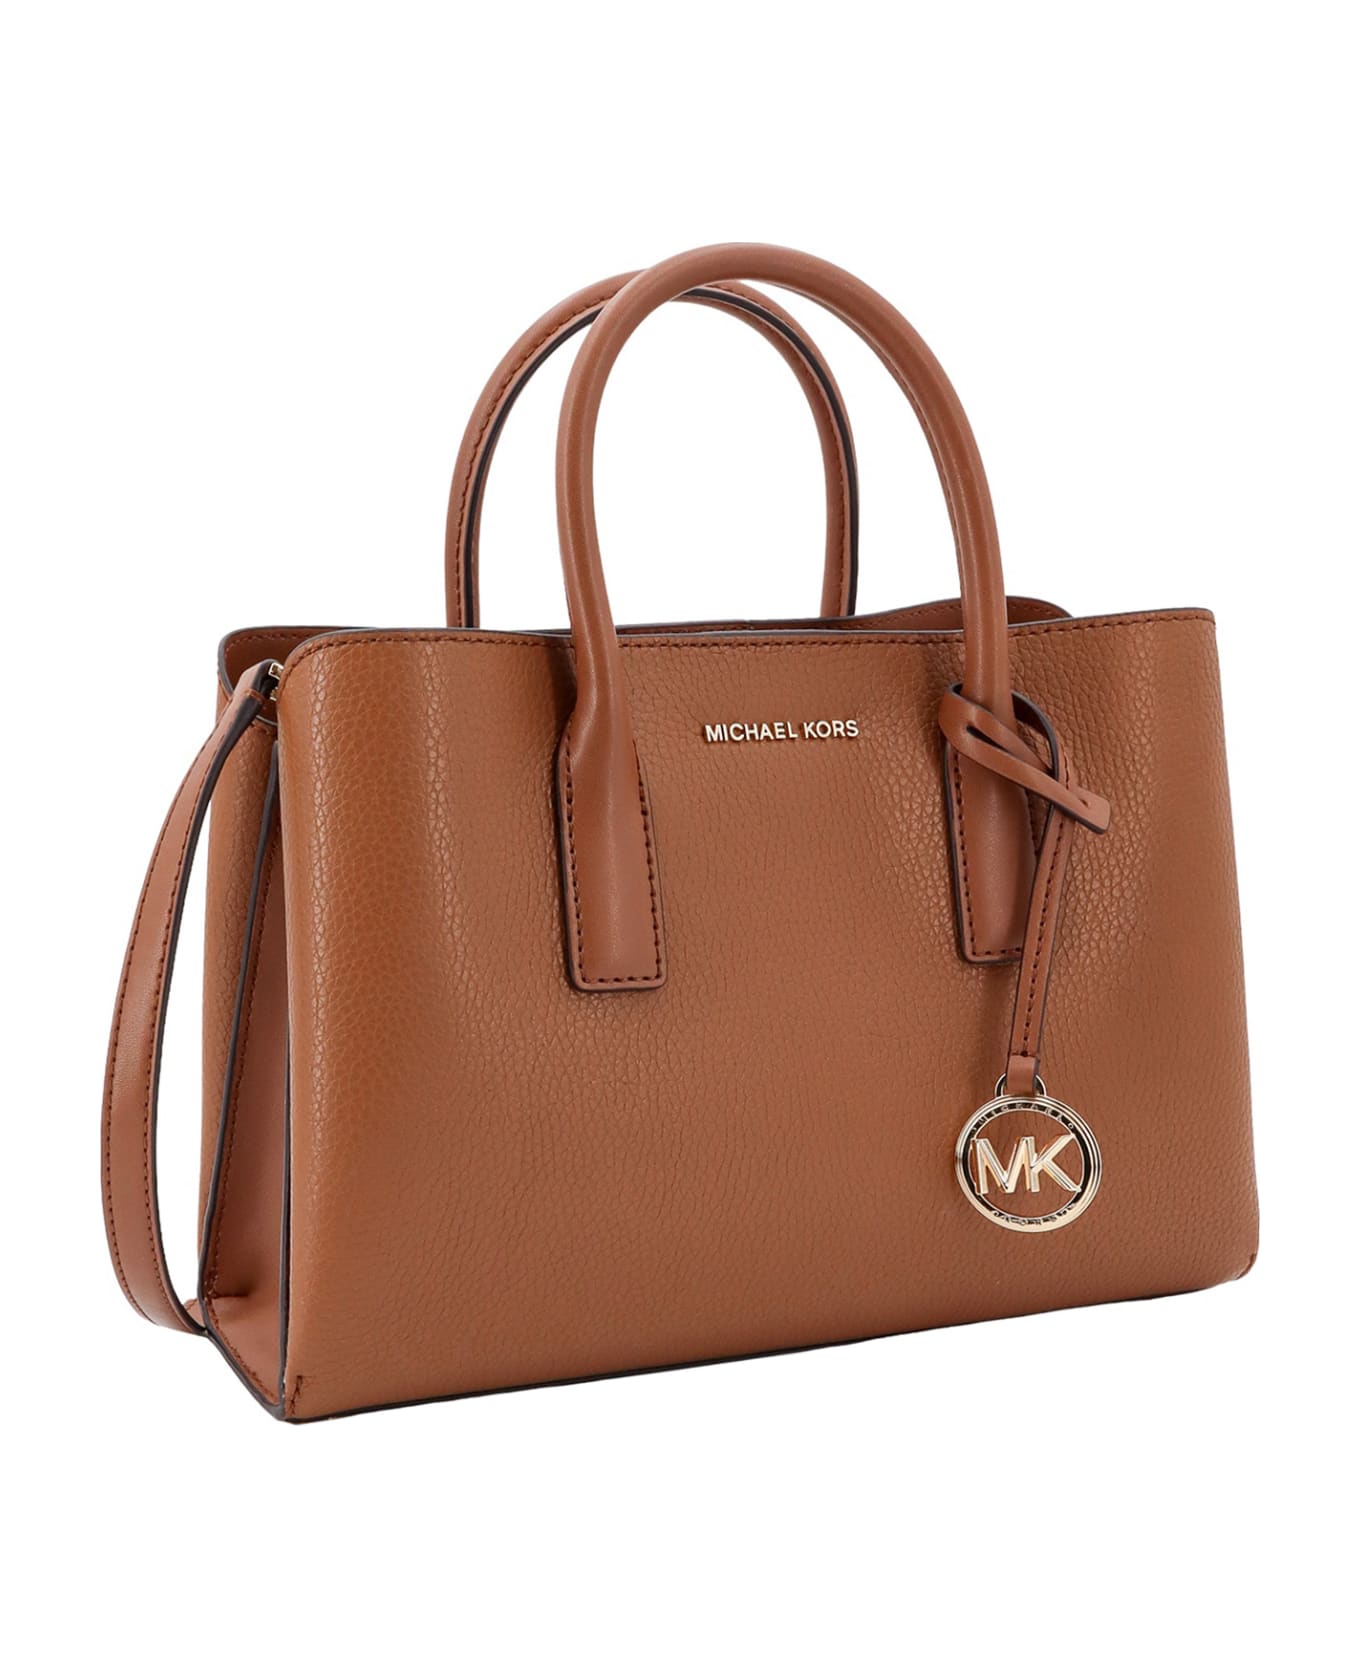 Michael Kors Collection Ruthie Handbag - Luggage